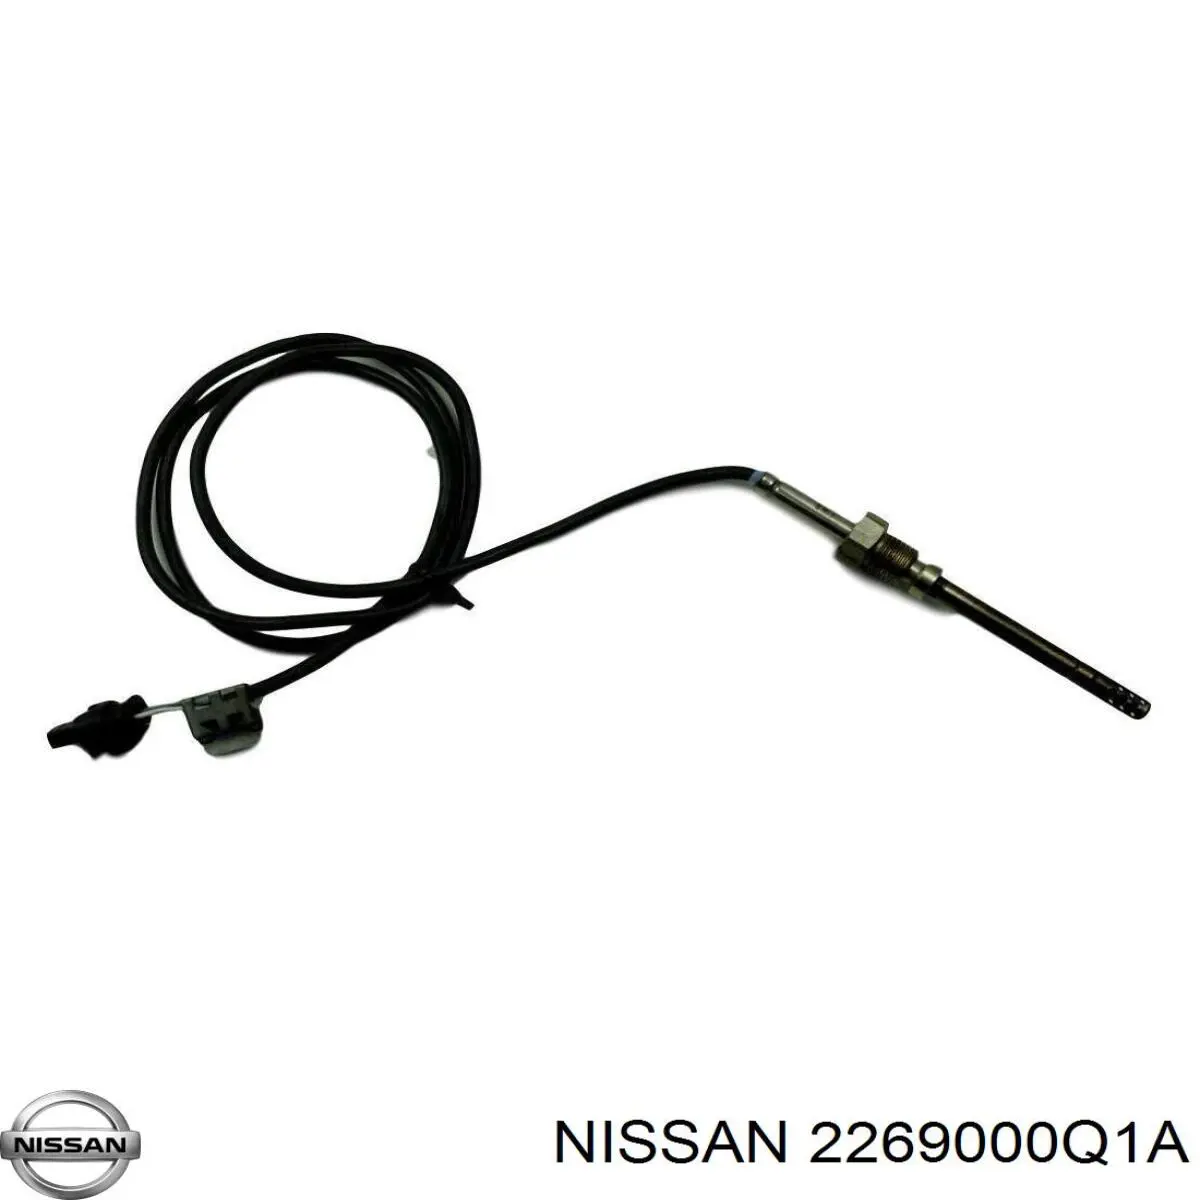 2269000Q1A Nissan sensor de temperatura, gas de escape, filtro hollín/partículas